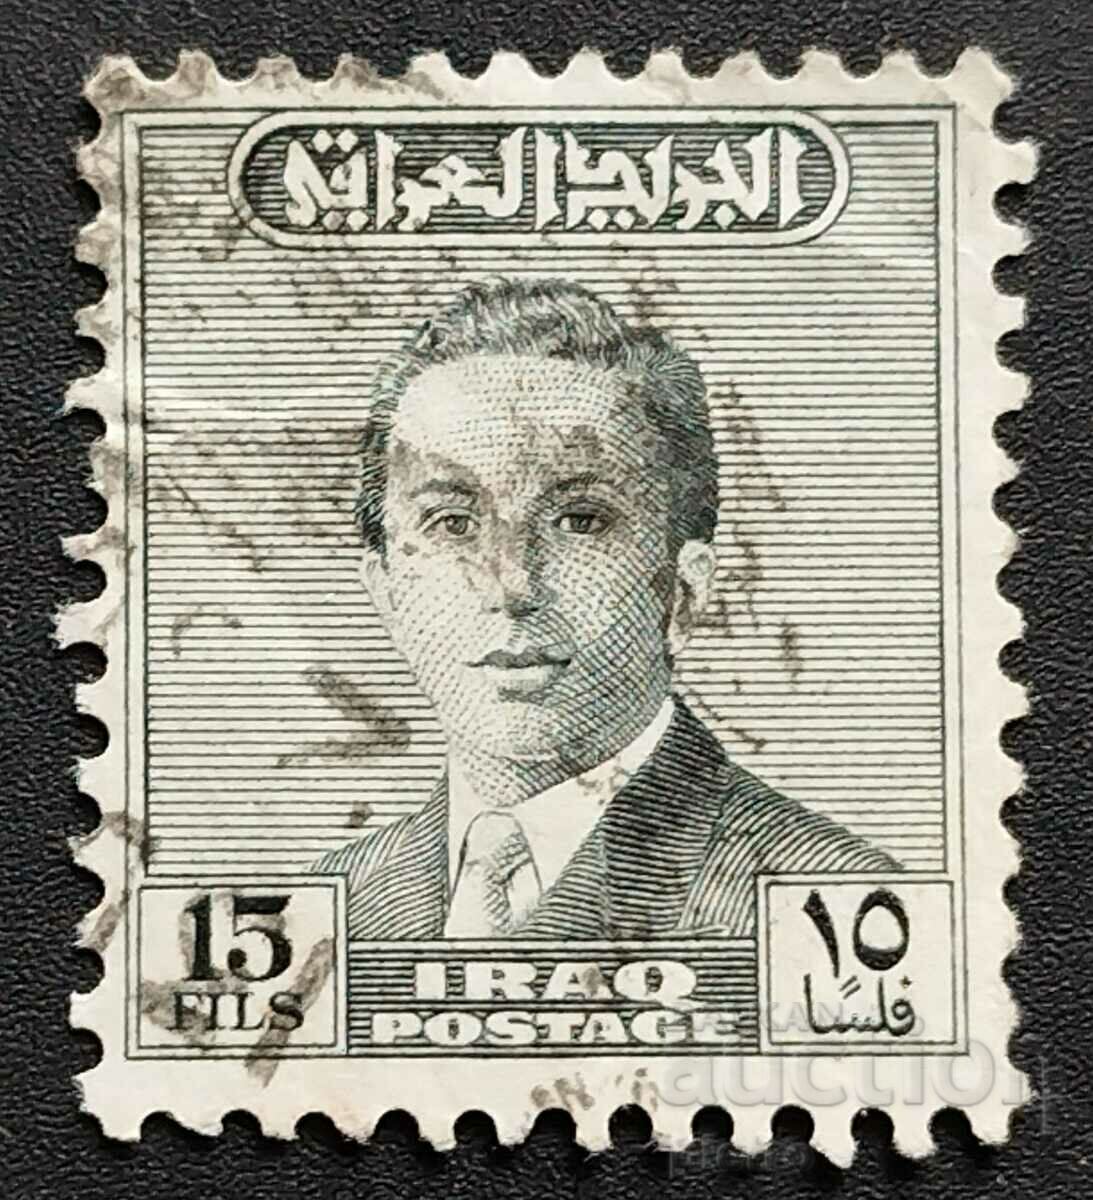 Iraq 1954-1957 15F. King Faisal II Stamped Postal...